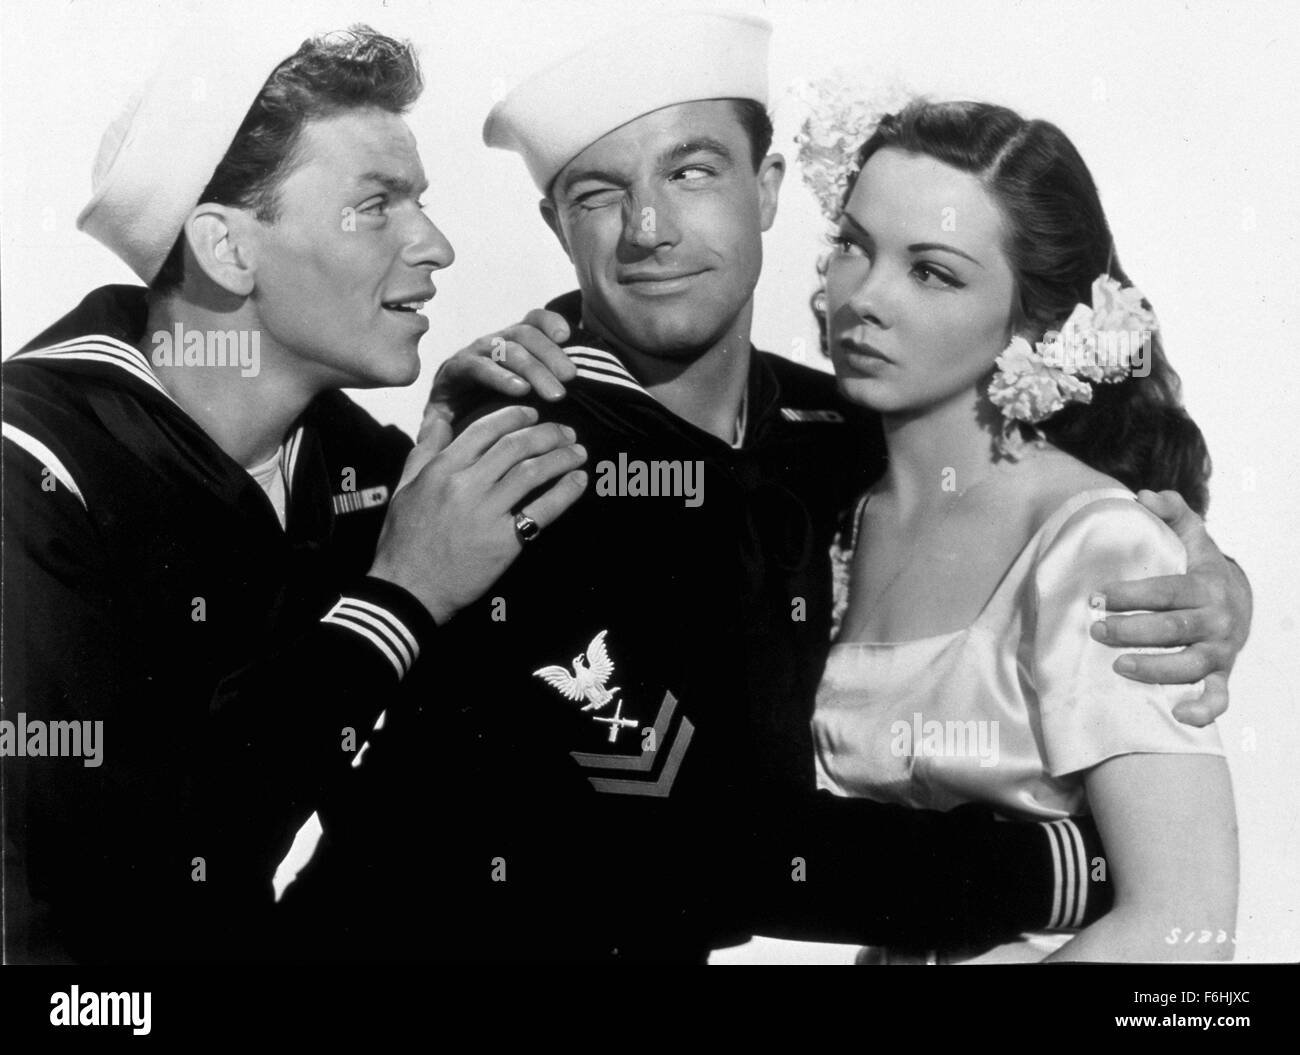 1945, le titre du film : VOGUE, Réalisateur : GEORGE SIDNEY, Studio : MGM, Photo : KATHRYN GRAYSON, Gene Kelly, George Sidney. (Crédit Image : SNAP) Banque D'Images